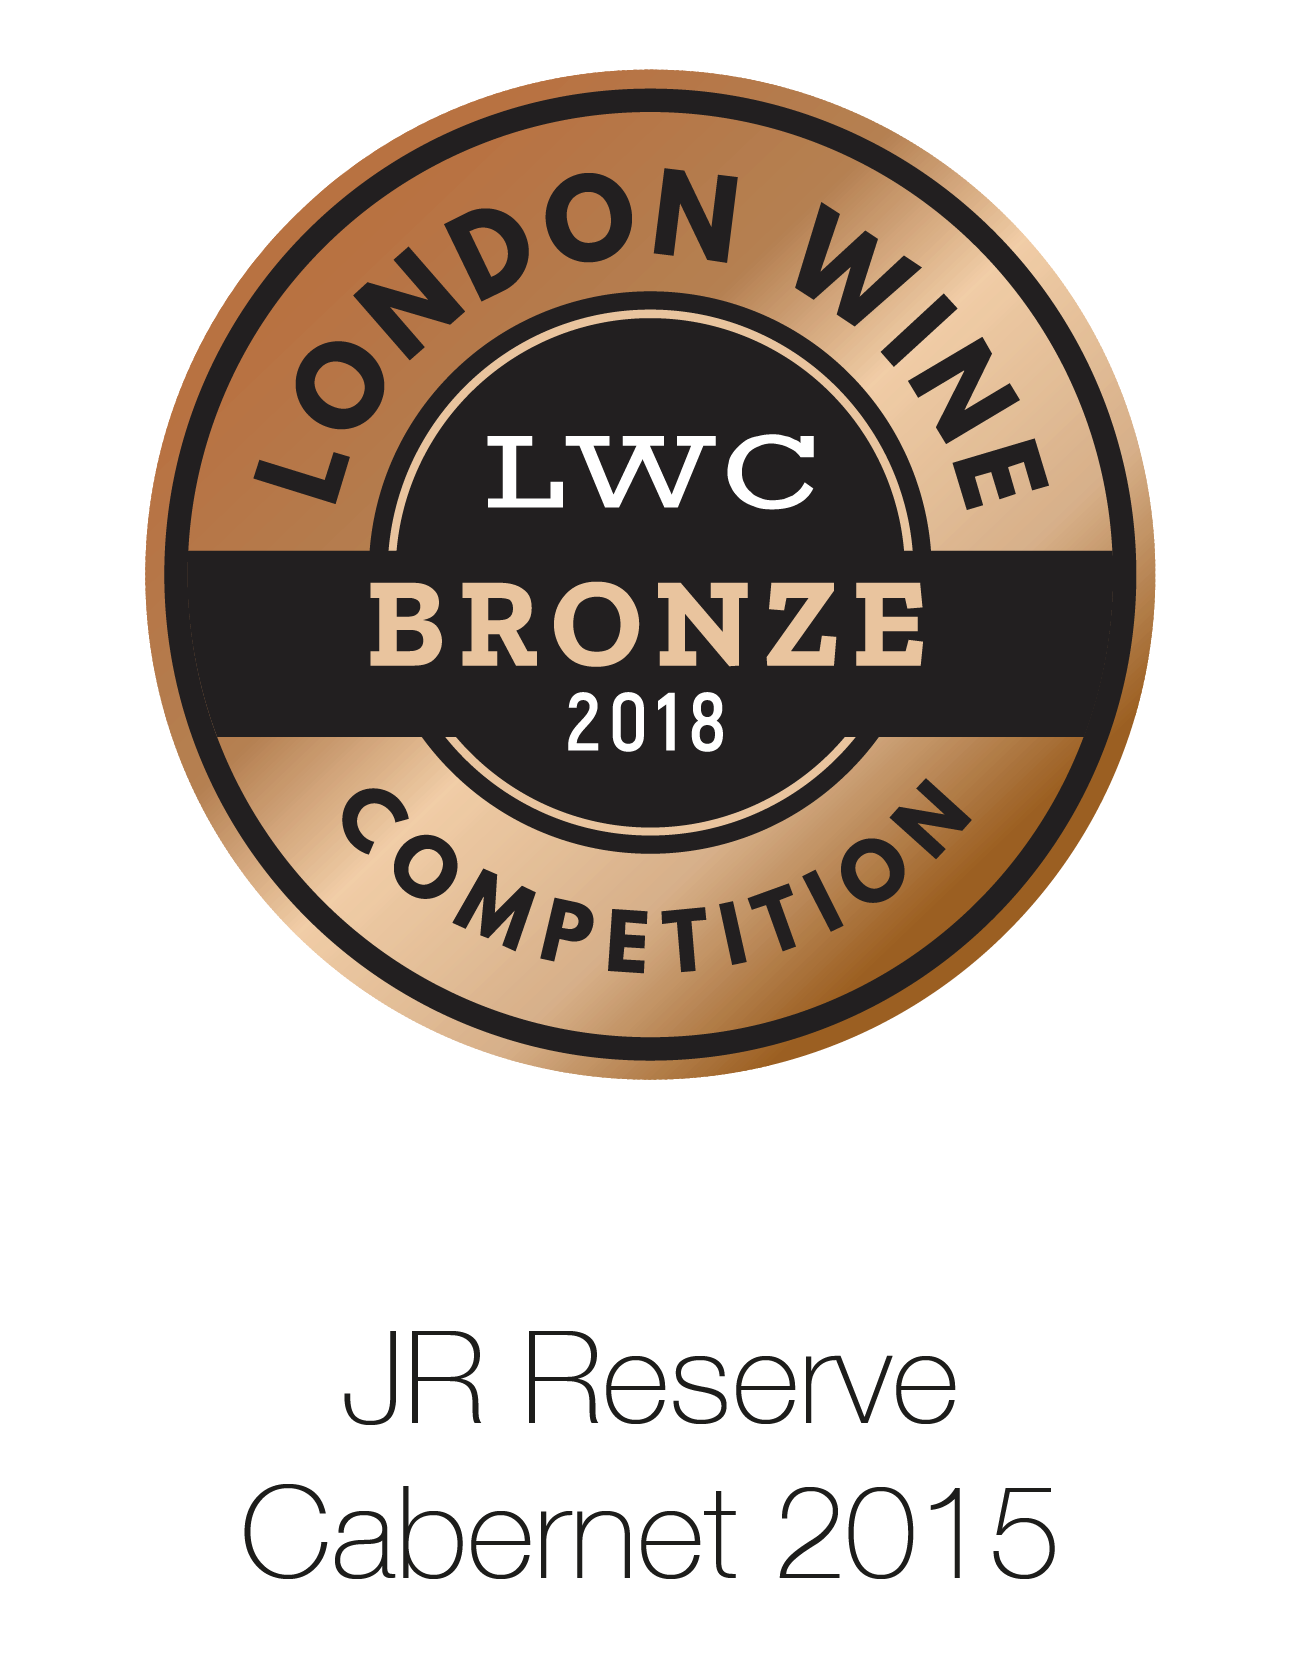 JR Reserve - Cabernet Sauvignon 2015 - London Wine Competition 2018